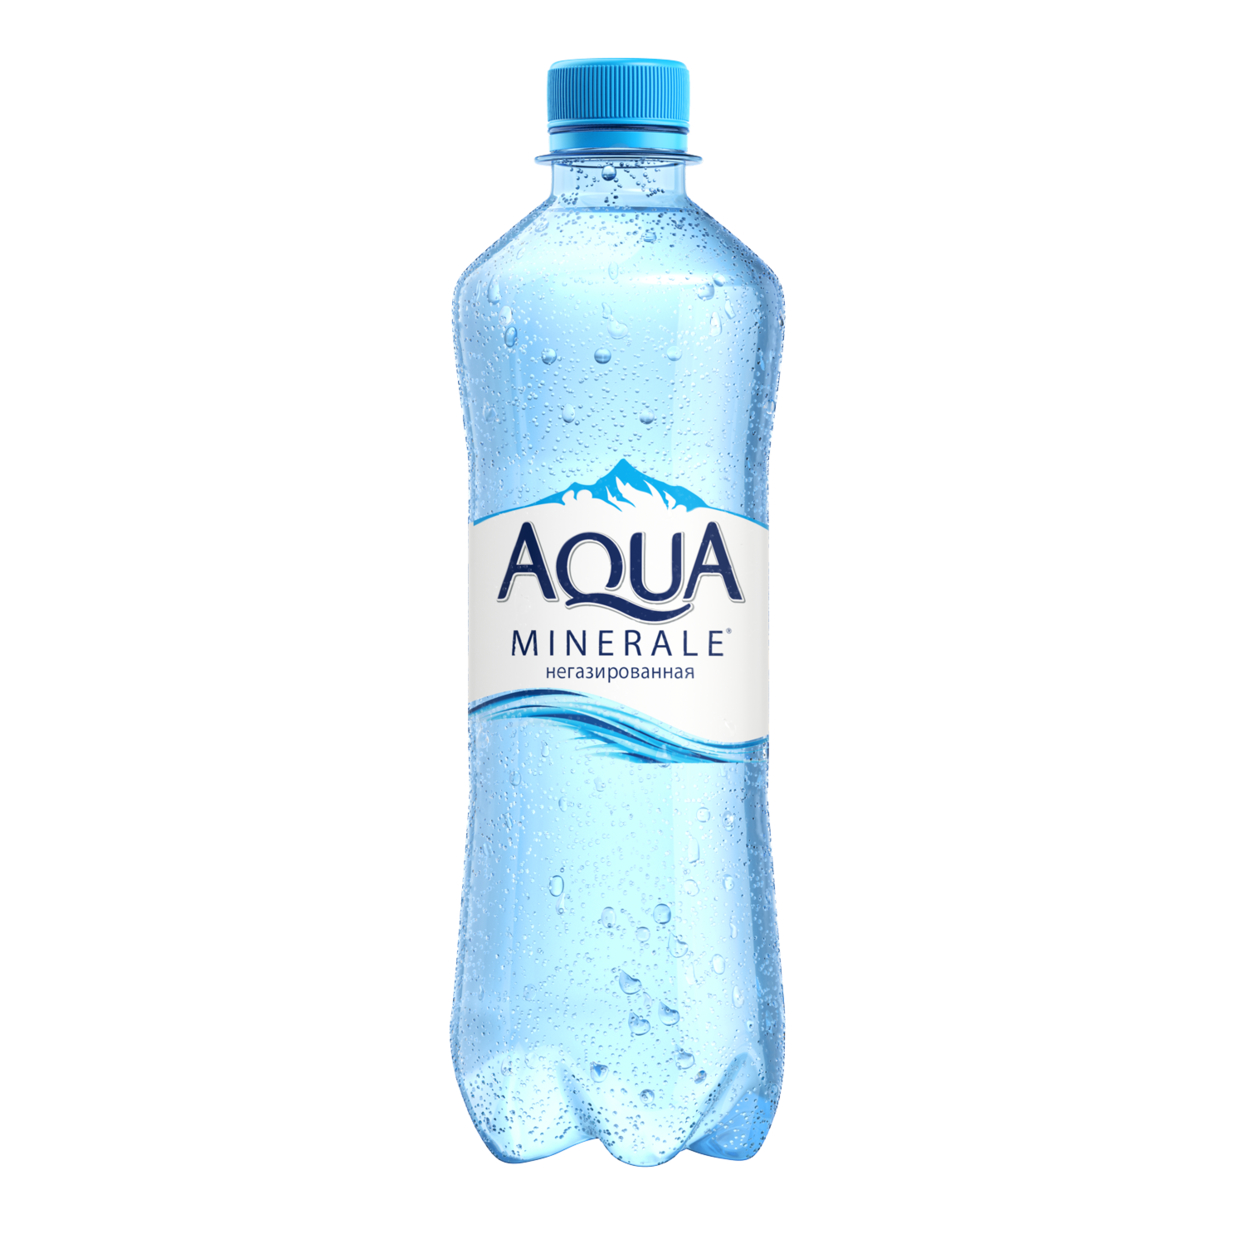 Вода питьевая негазированная первой категории под товарным знаком "Аква Минерале" 0.5л по акции в Пятерочке